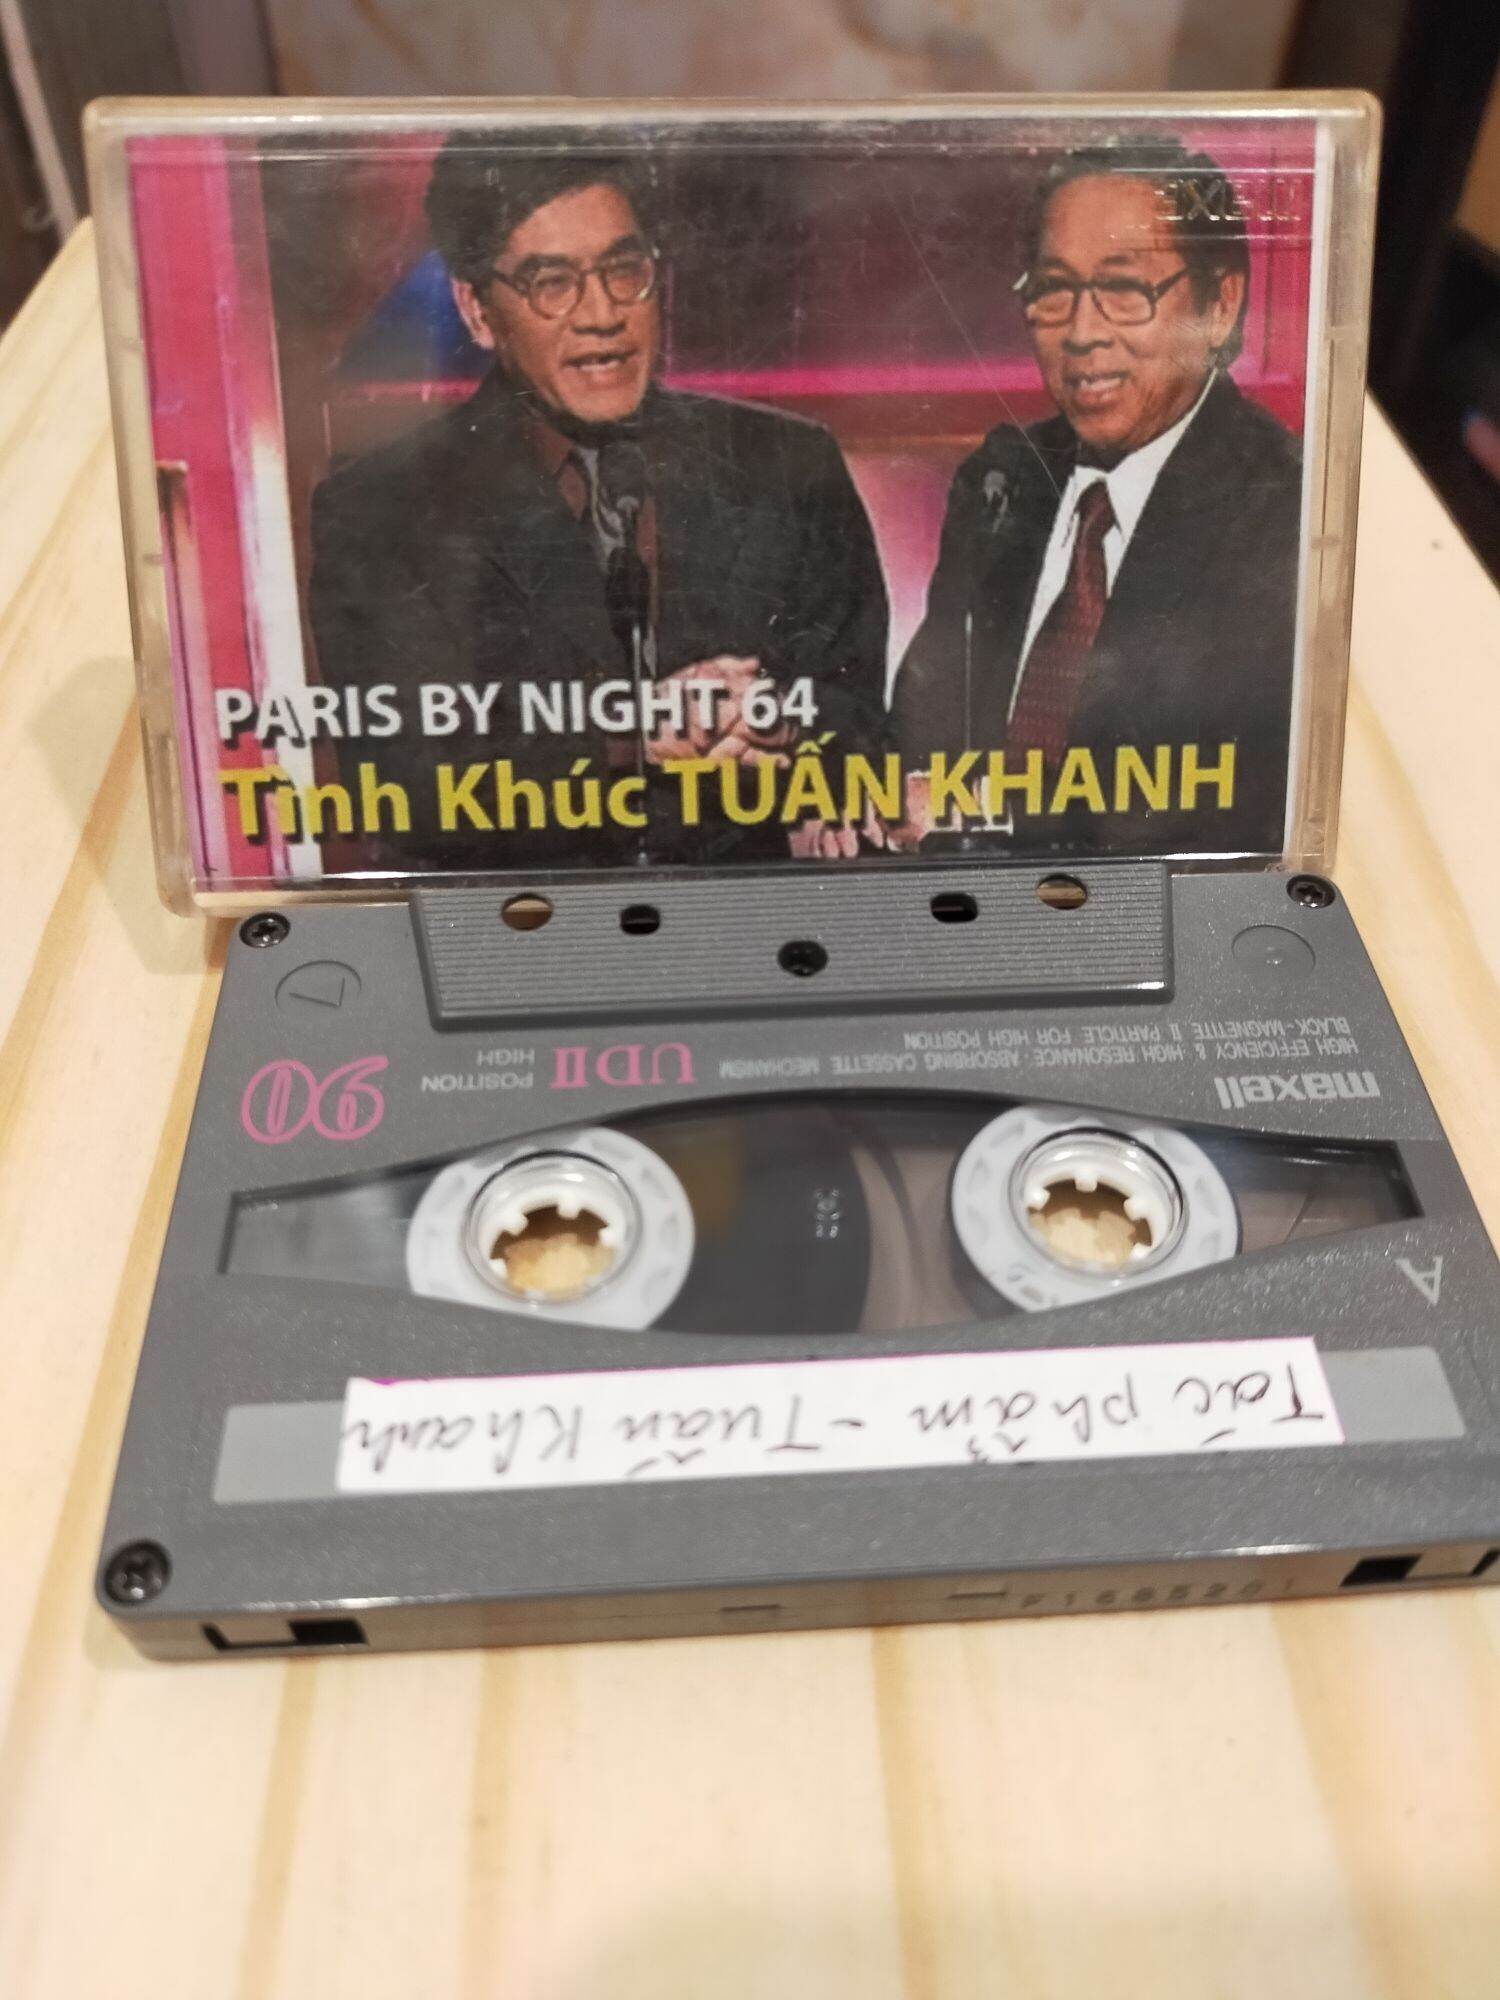 1 băng cassette maxell UD 2 tình khúc Tuấn Khanh( lưu ý: đây là băng cũ